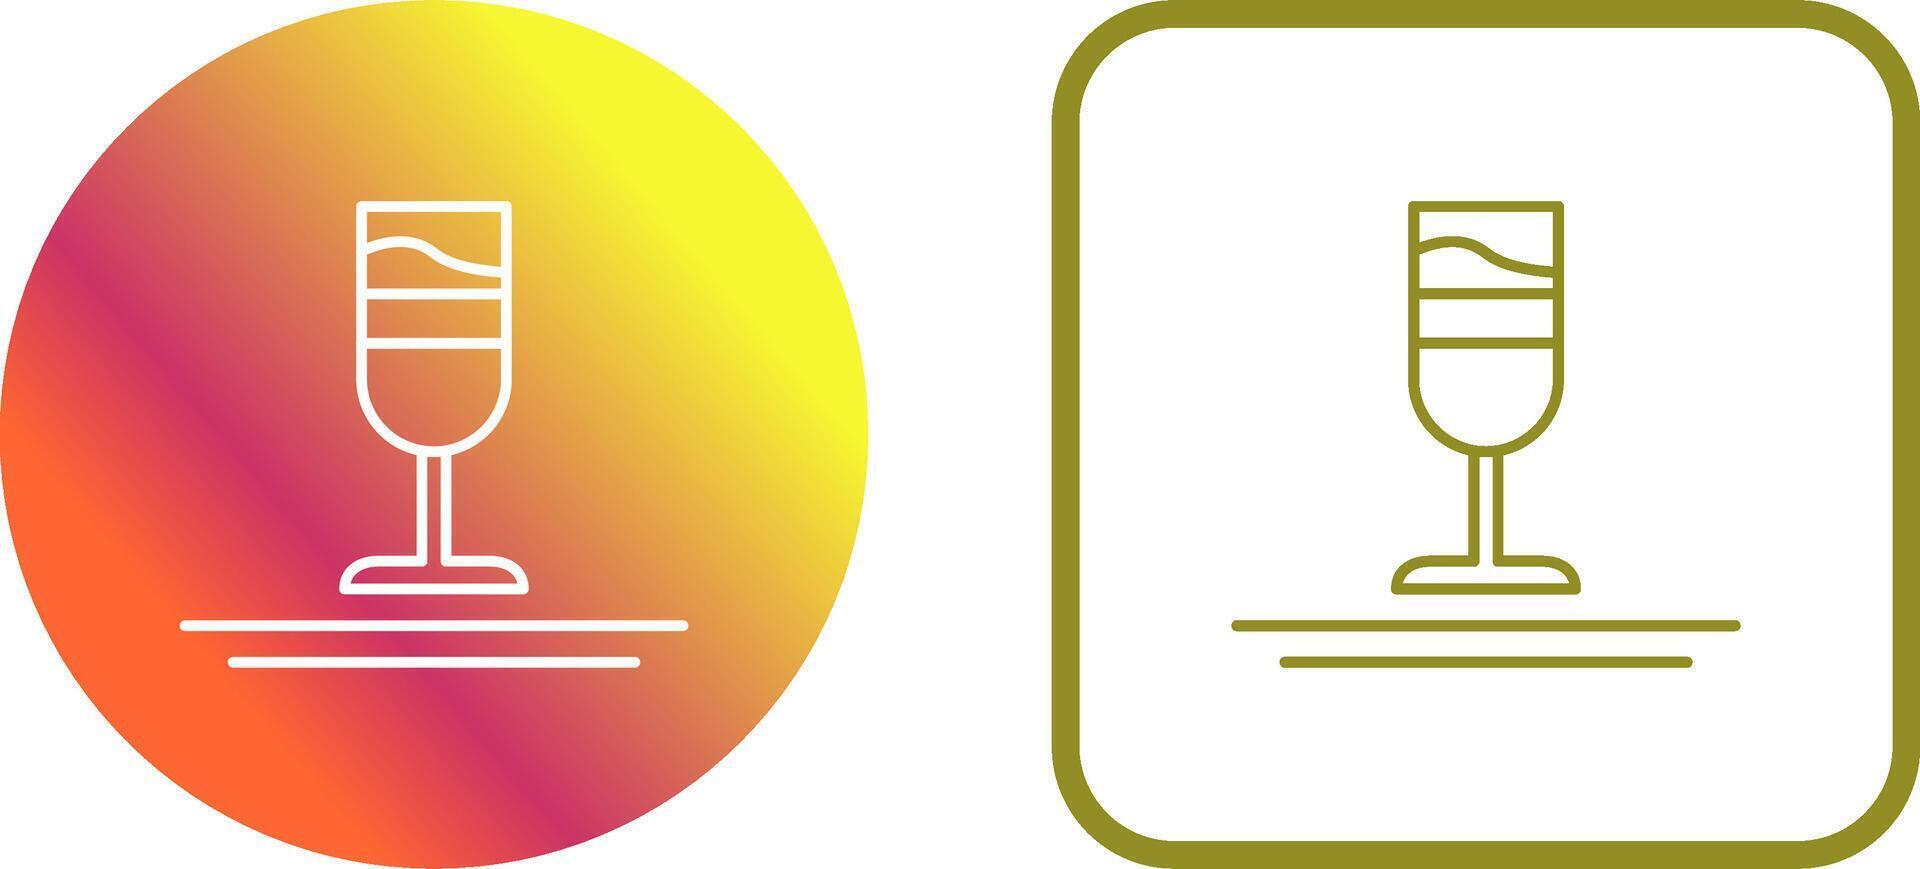 Rainbow Drink Icon Design vector